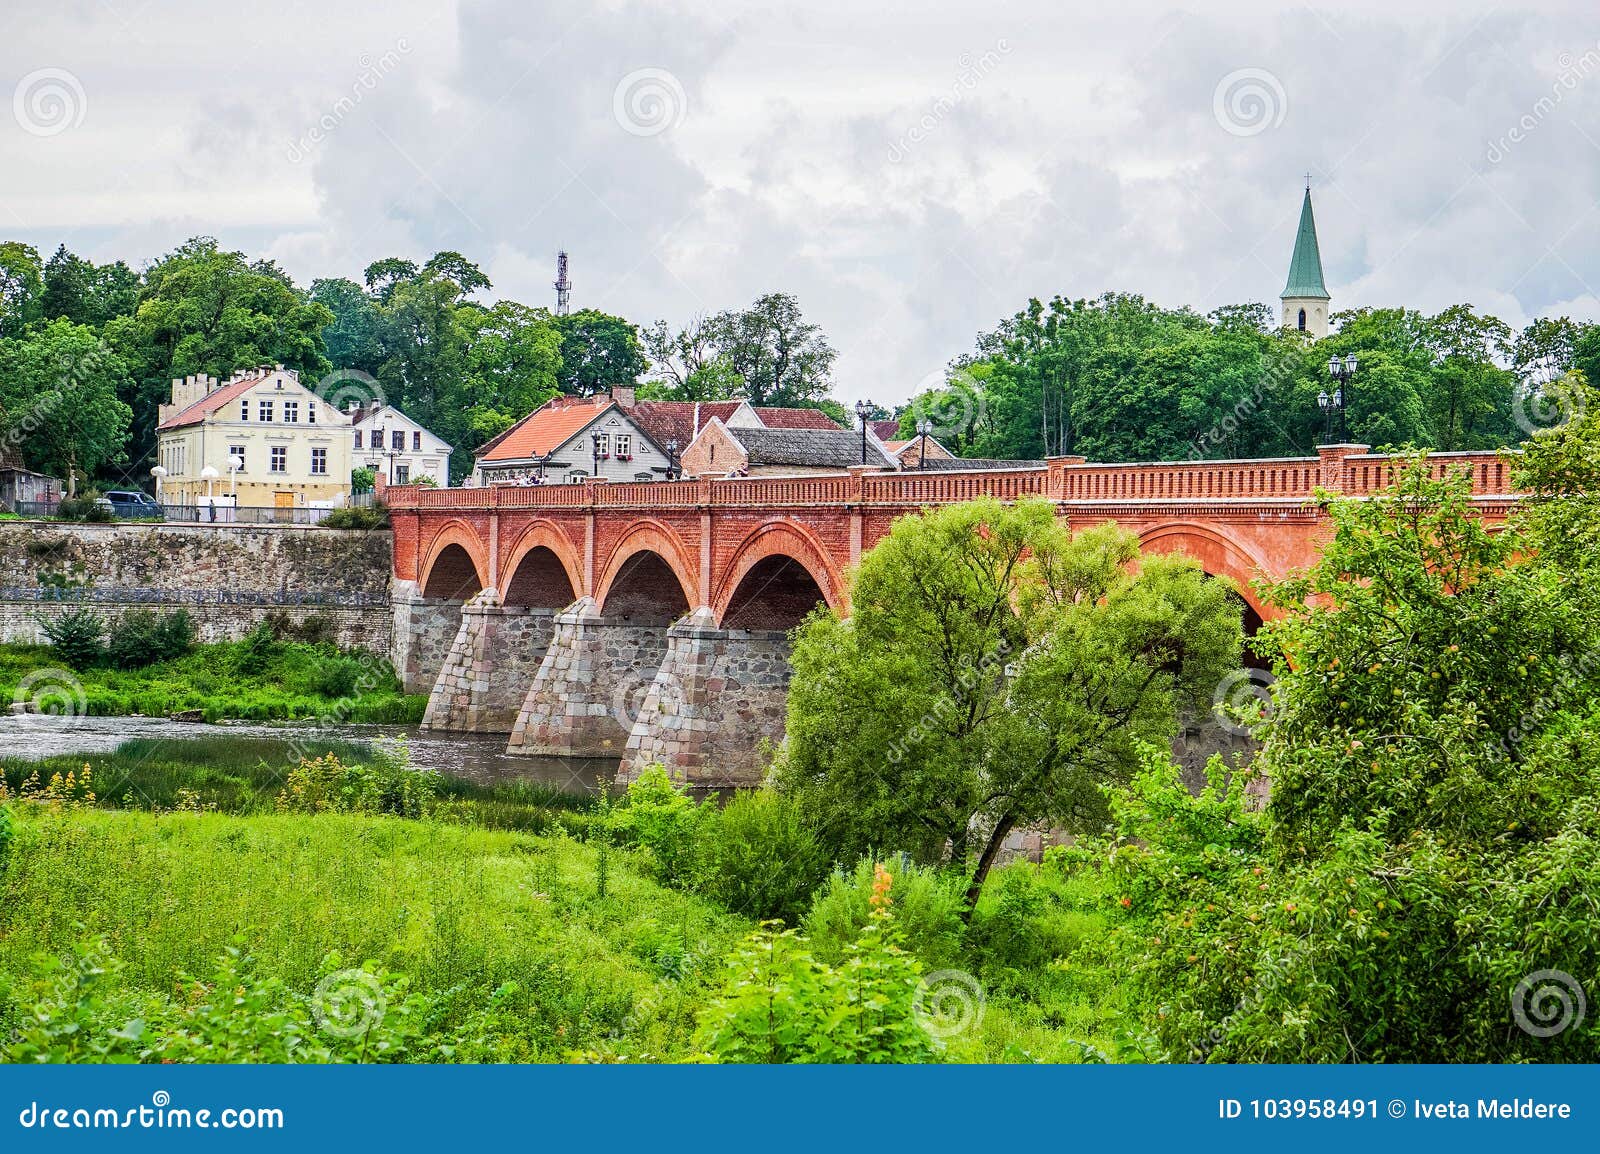 bridge across the river venta in the city of kuldiga